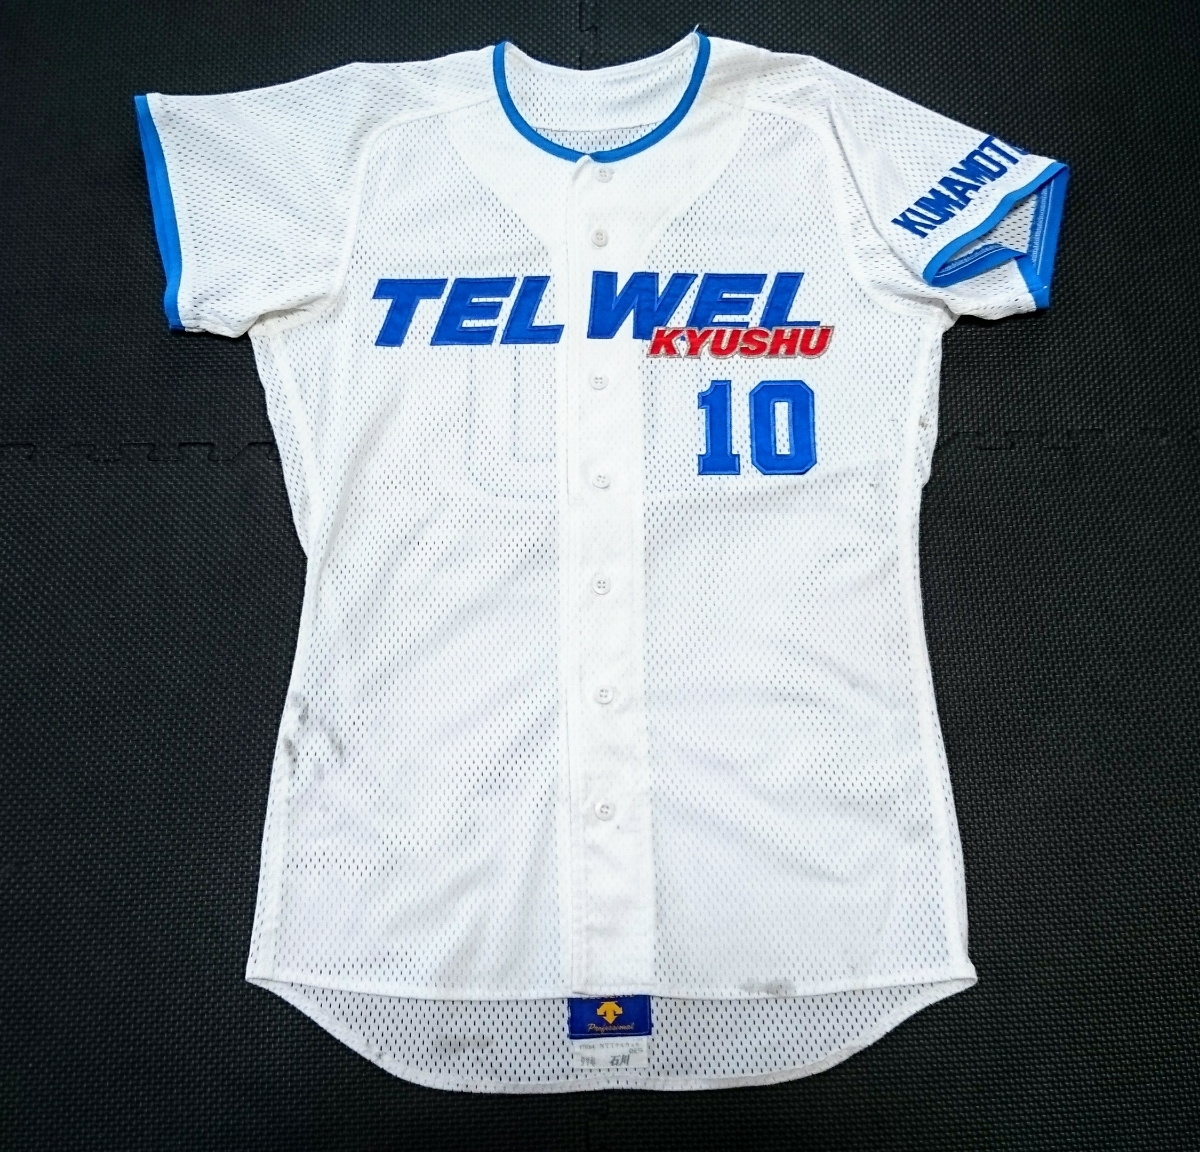 有名な高級ブランド 97年製 NTTテルウェル TELWEL九州 デサント 背番号10 ISHIKAWA ユニフォーム 実使用 社会人野球 熊本 応援ユニフォーム、ウエア